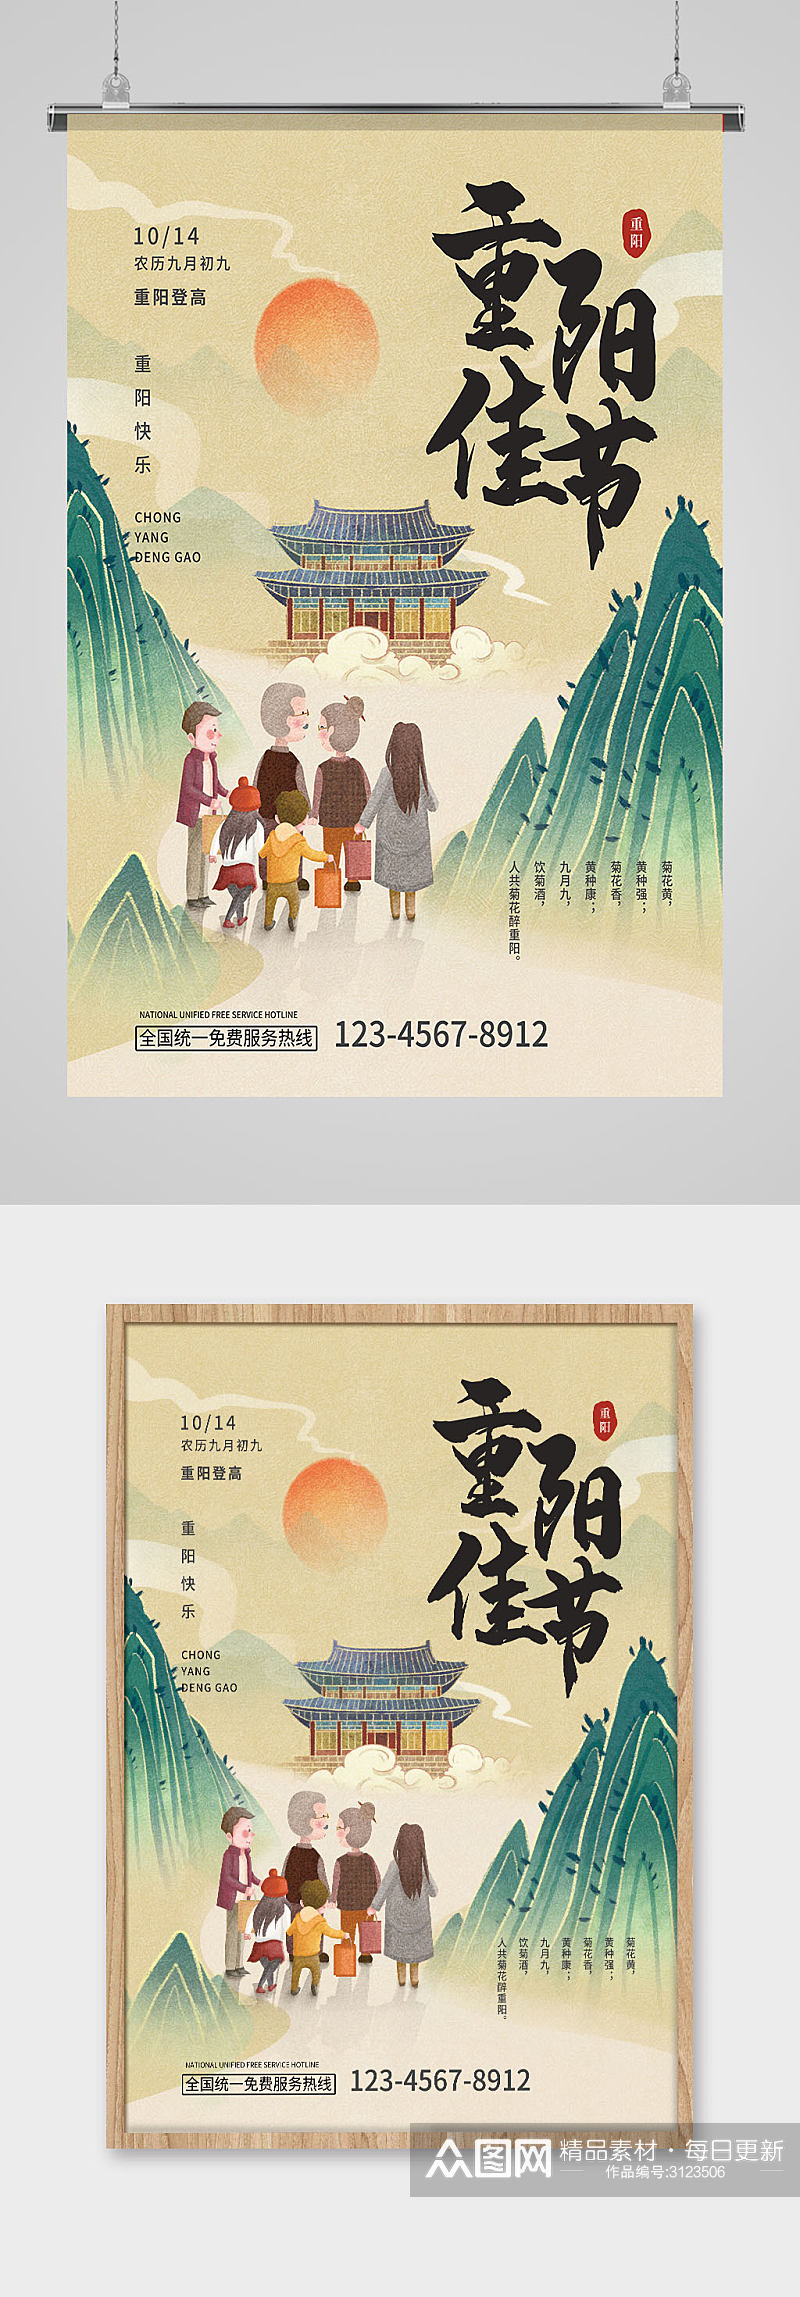 重阳佳节水墨风格中国传统节日重阳节日海报素材